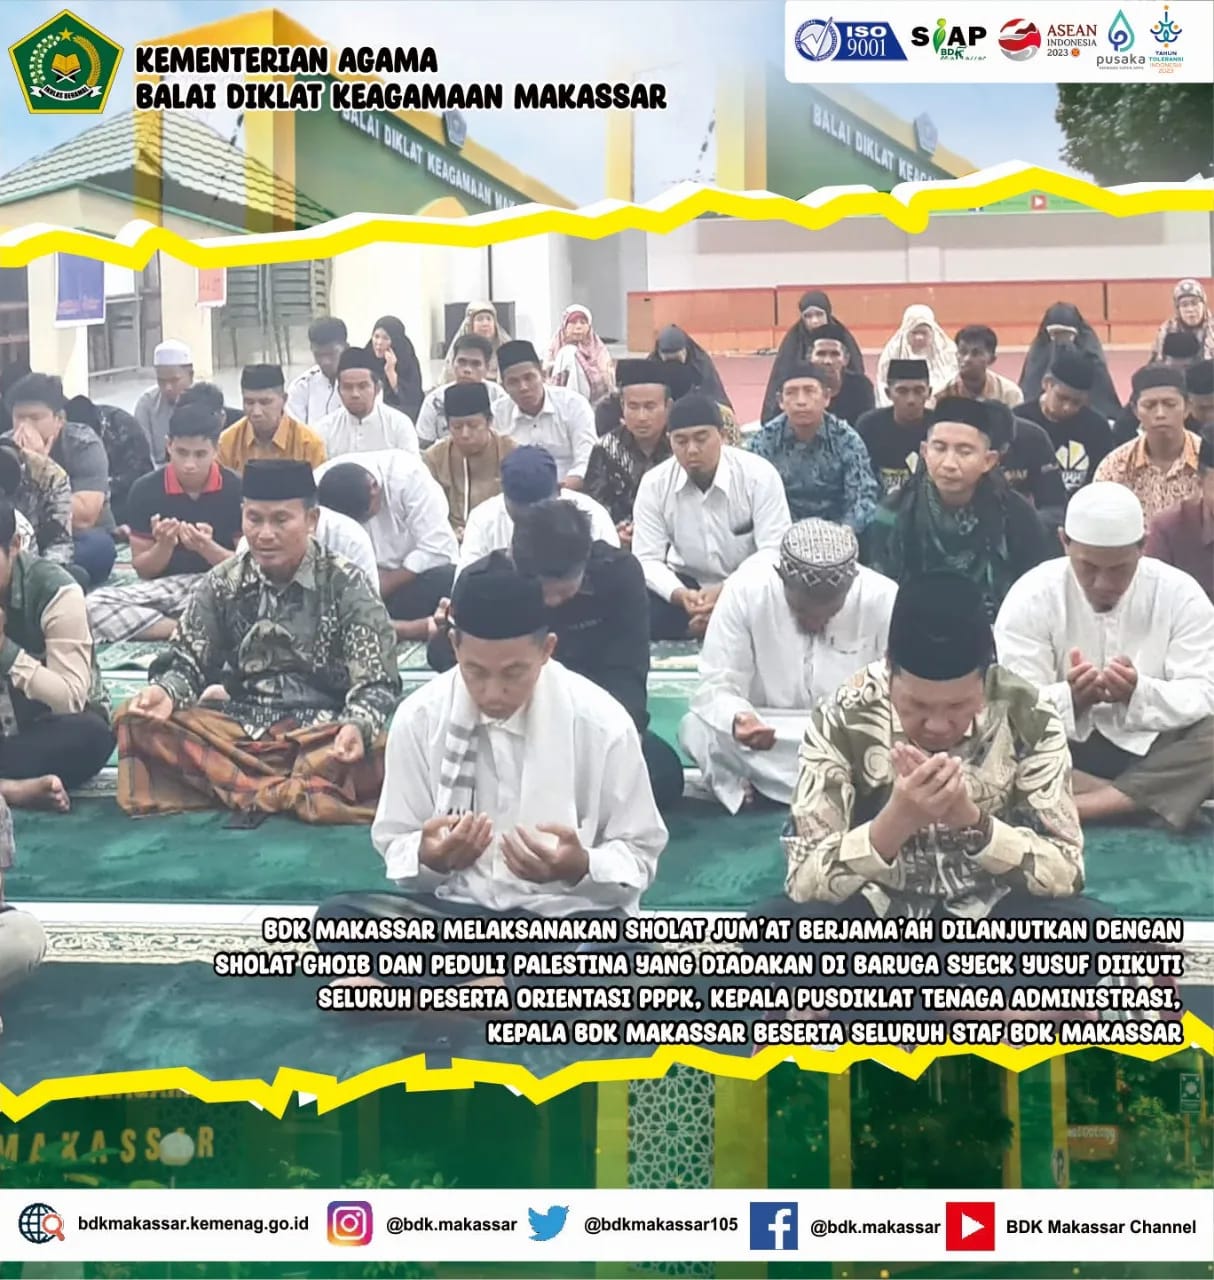 Solidaritas  Palestina, BDK Makassar gelar Shalat Gaib, pembacaan Qunut Nazilah, dan Doa Bersama 